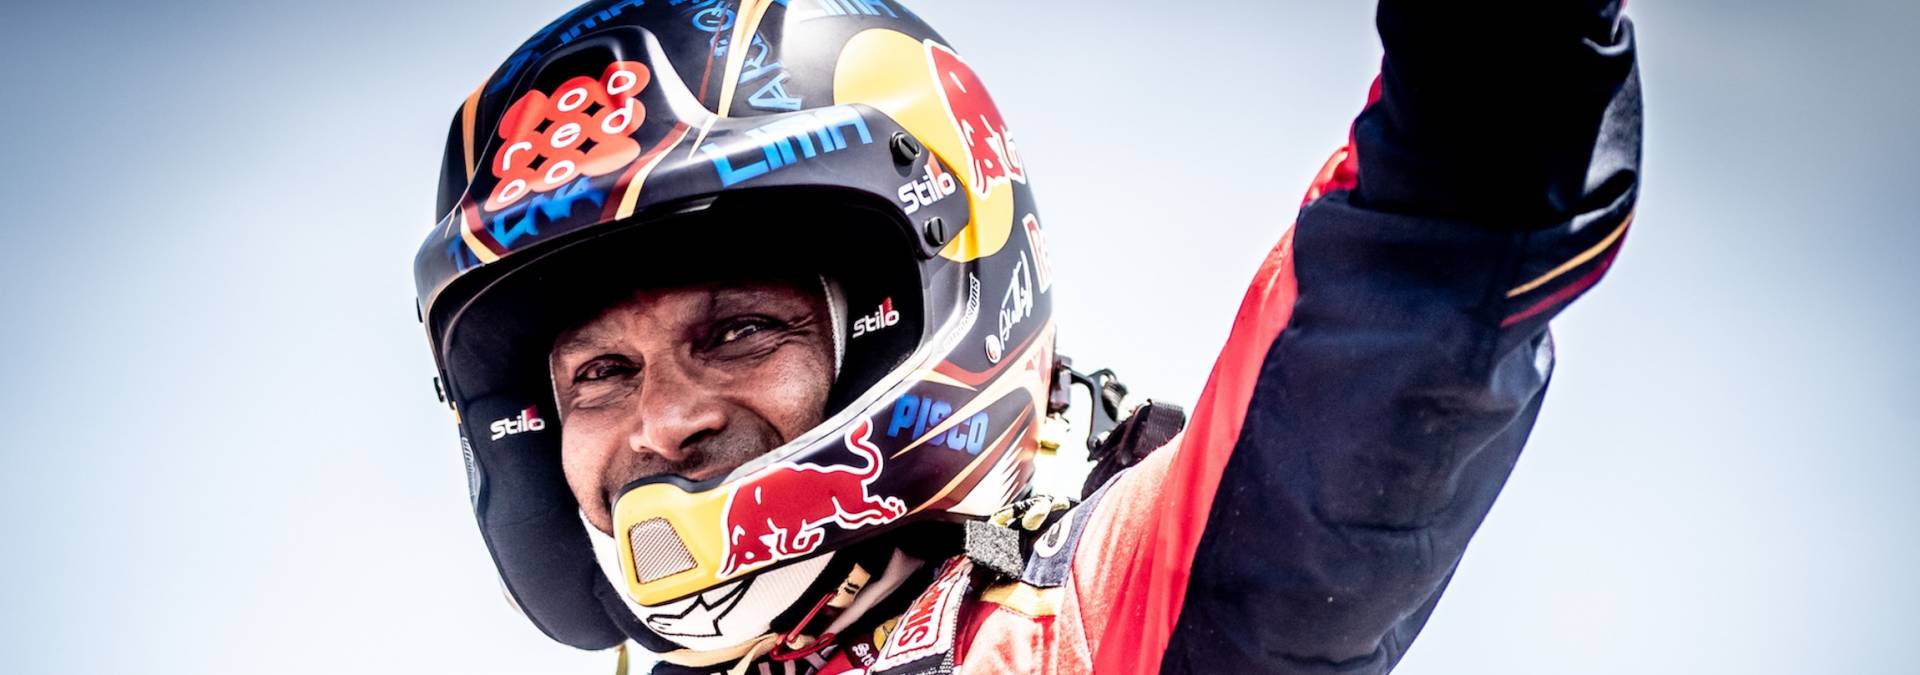 Rajd Dakar 2019 dla Toyoty. Nasser Al-Attiyah wygrał trzeci raz